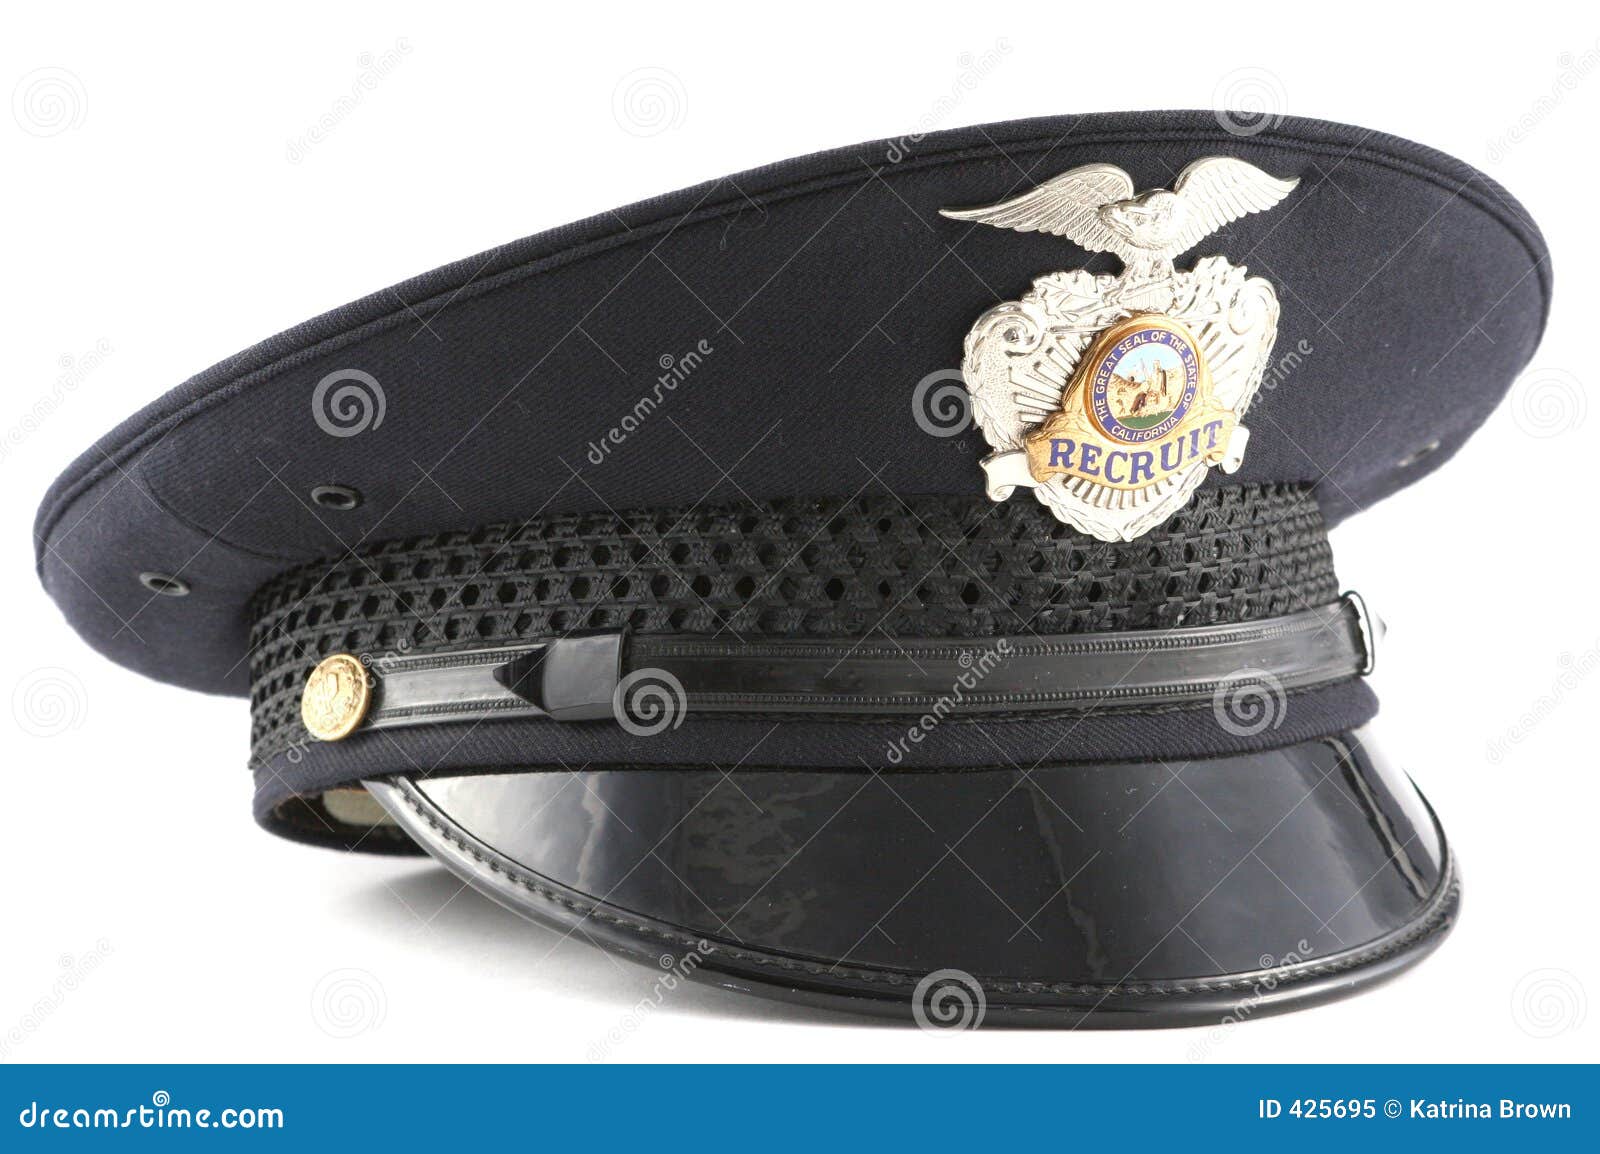 clip art cop hat - photo #38